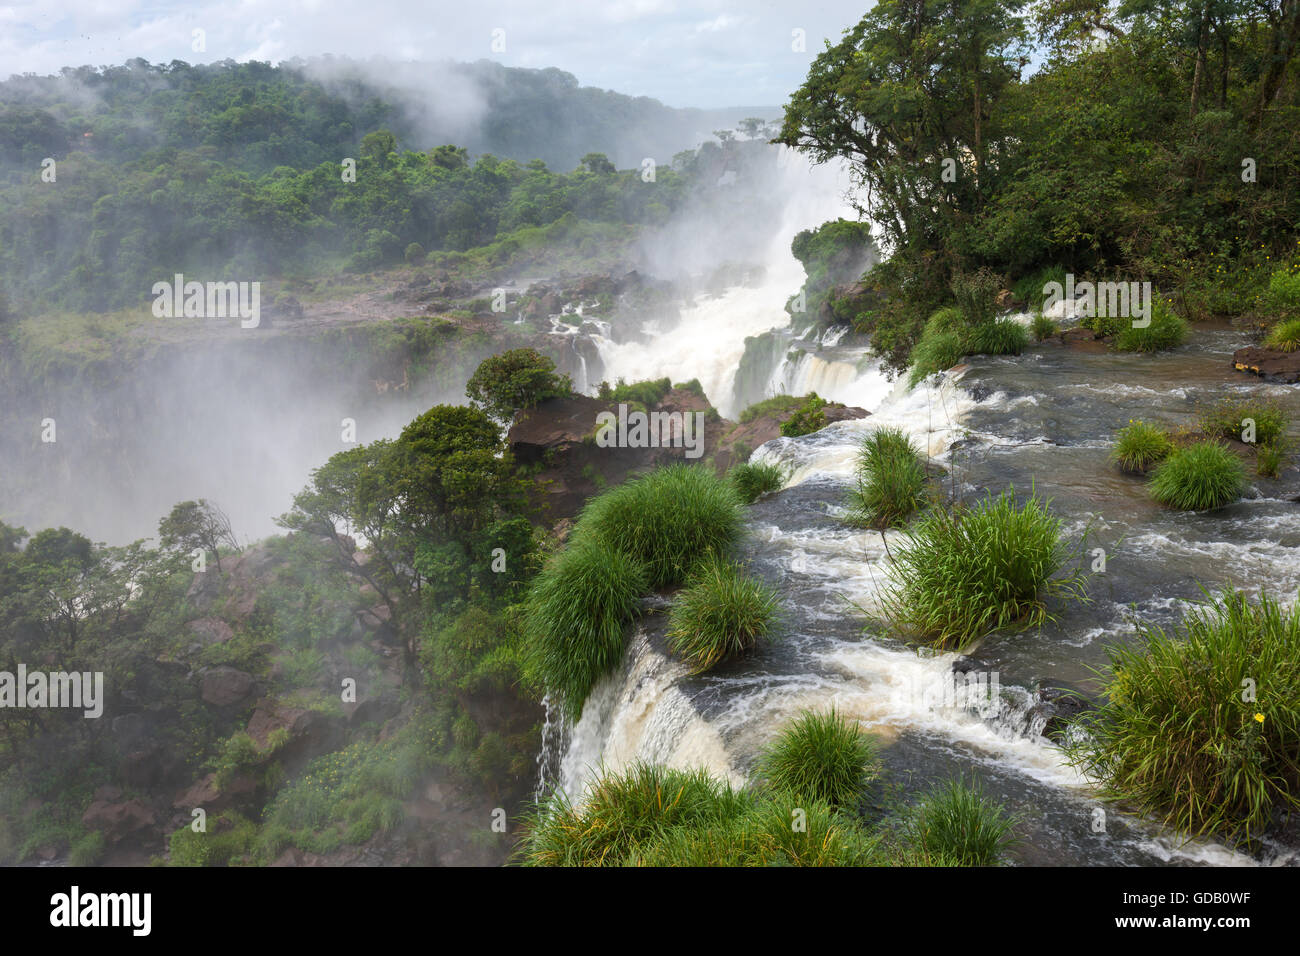 Las Cataratas del Iguazú, Argentina Foto de stock